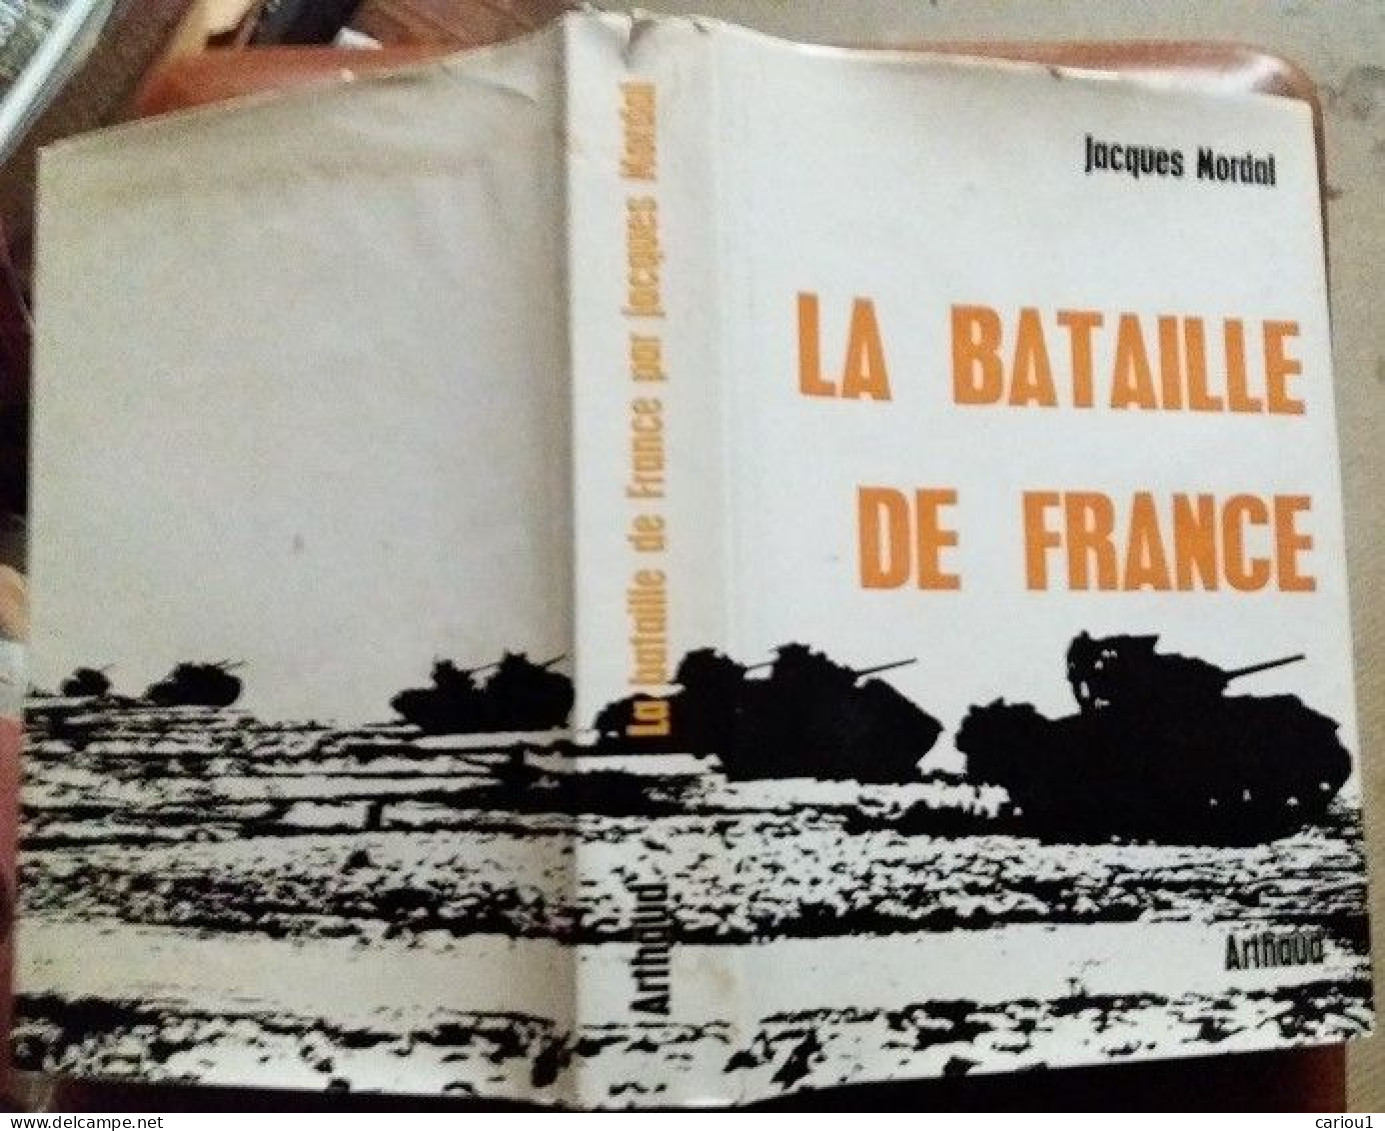 C1 Jacques MORDAL La BATAILLE DE FRANCE 1944 1945 Relie ILLUSTRE Epuise CARTES Port Inclus France - Francese